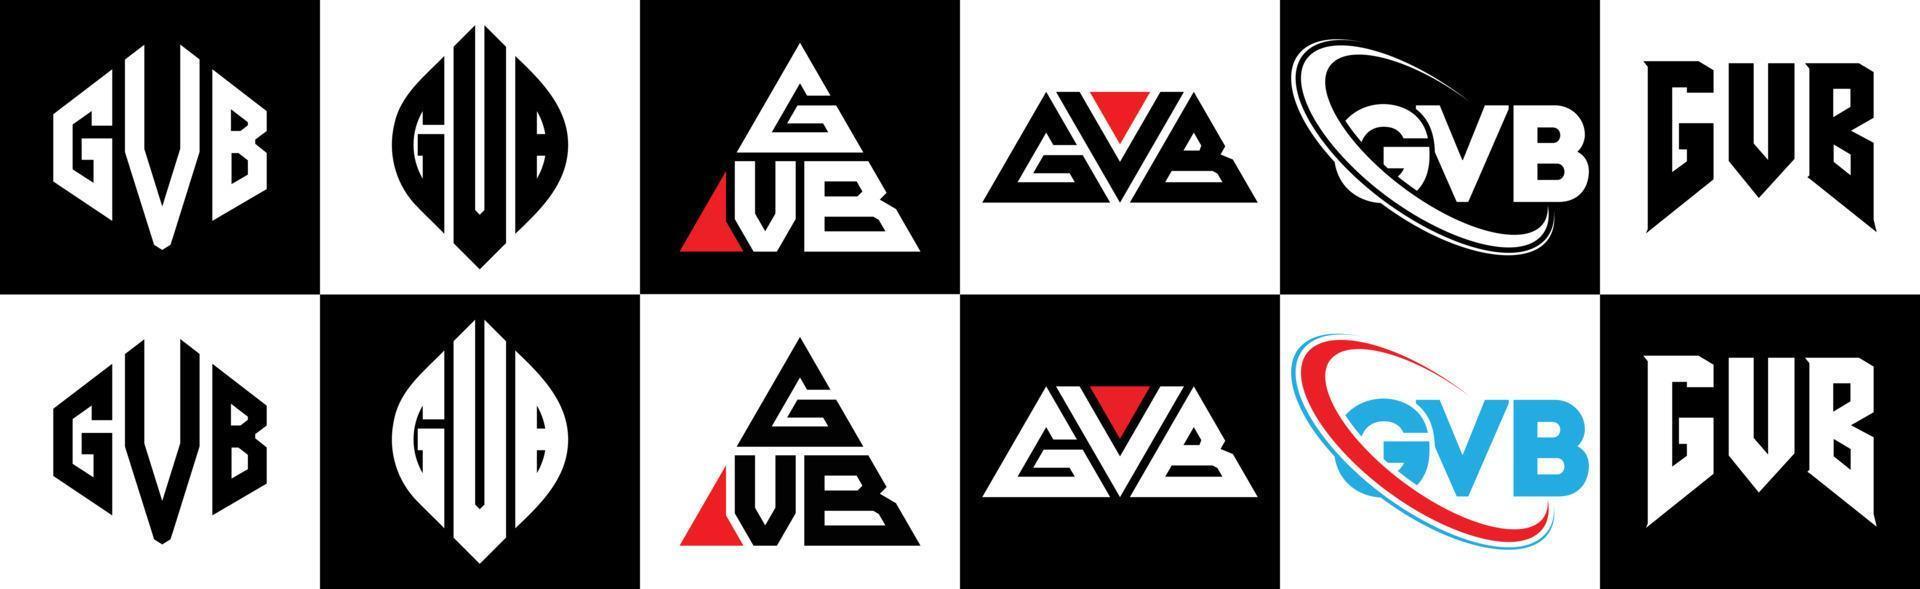 gvb-Buchstaben-Logo-Design in sechs Stilen. gvb Polygon, Kreis, Dreieck, Sechseck, flacher und einfacher Stil mit schwarz-weißem Buchstabenlogo in einer Zeichenfläche. gvb minimalistisches und klassisches logo vektor